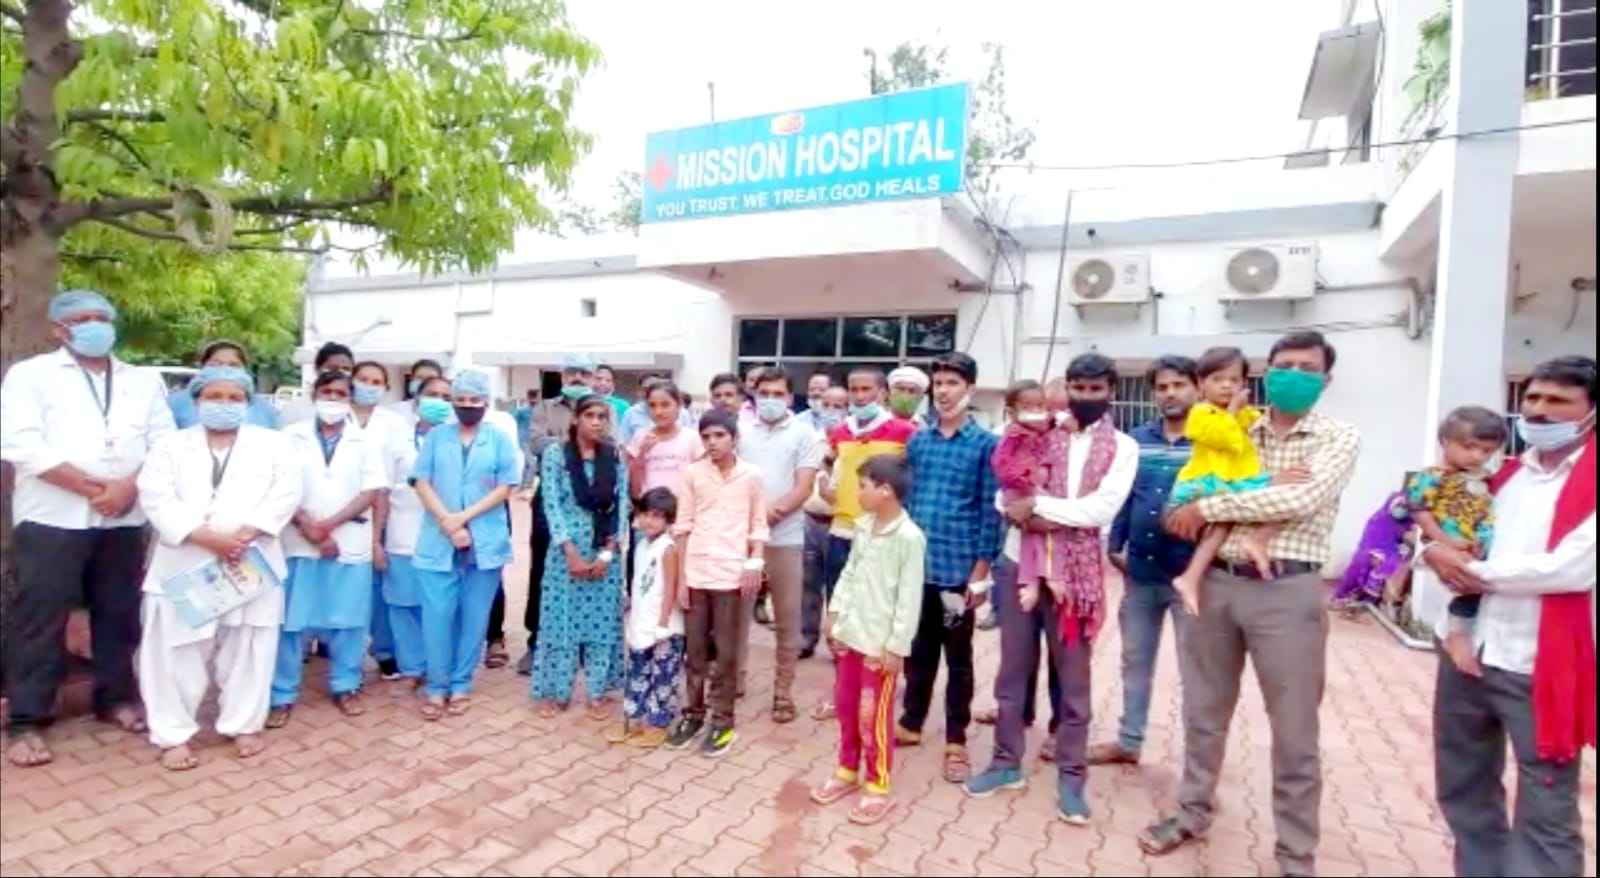 मिशन अस्पताल बनी गरीबों के लिए वरदान: निःशुल्क सर्जरी कैम्प में गरीब बच्चों को मिली नई मुस्कान, कटे होंठ, फटे तलुओं से पीड़ित 15 बच्चों की हुई प्लास्टिक सर्जरी | New India Times